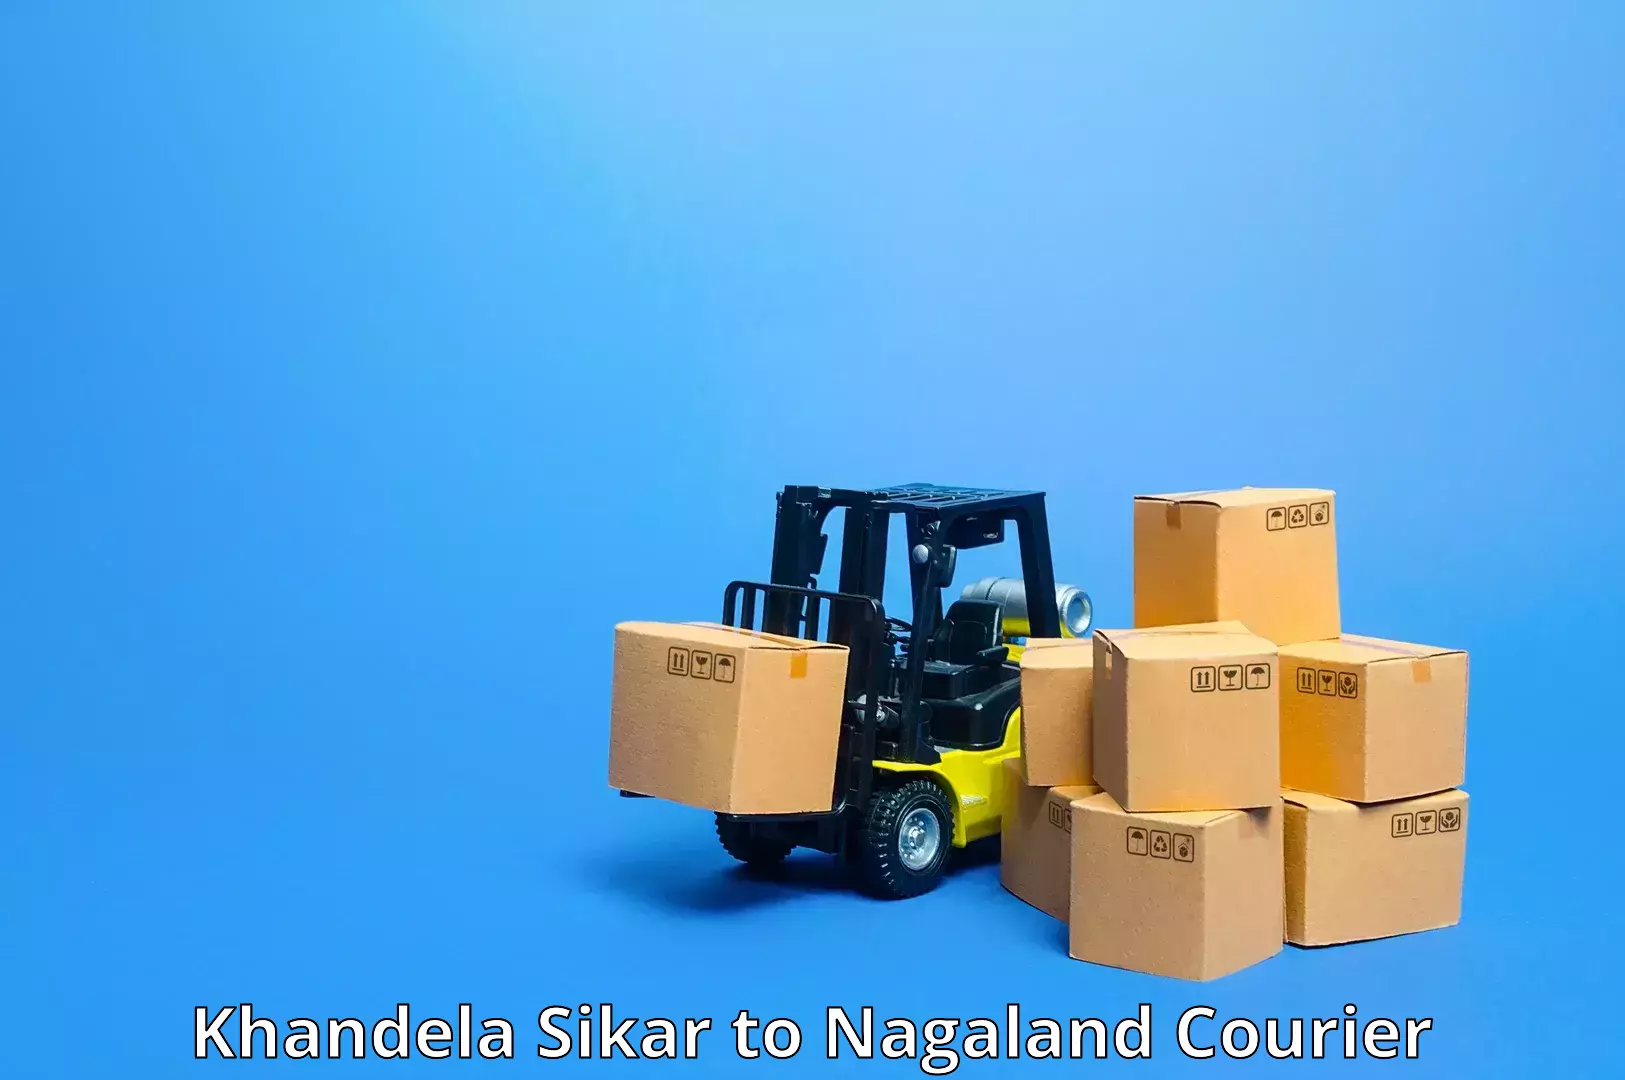 Tailored shipping plans Khandela Sikar to Mon